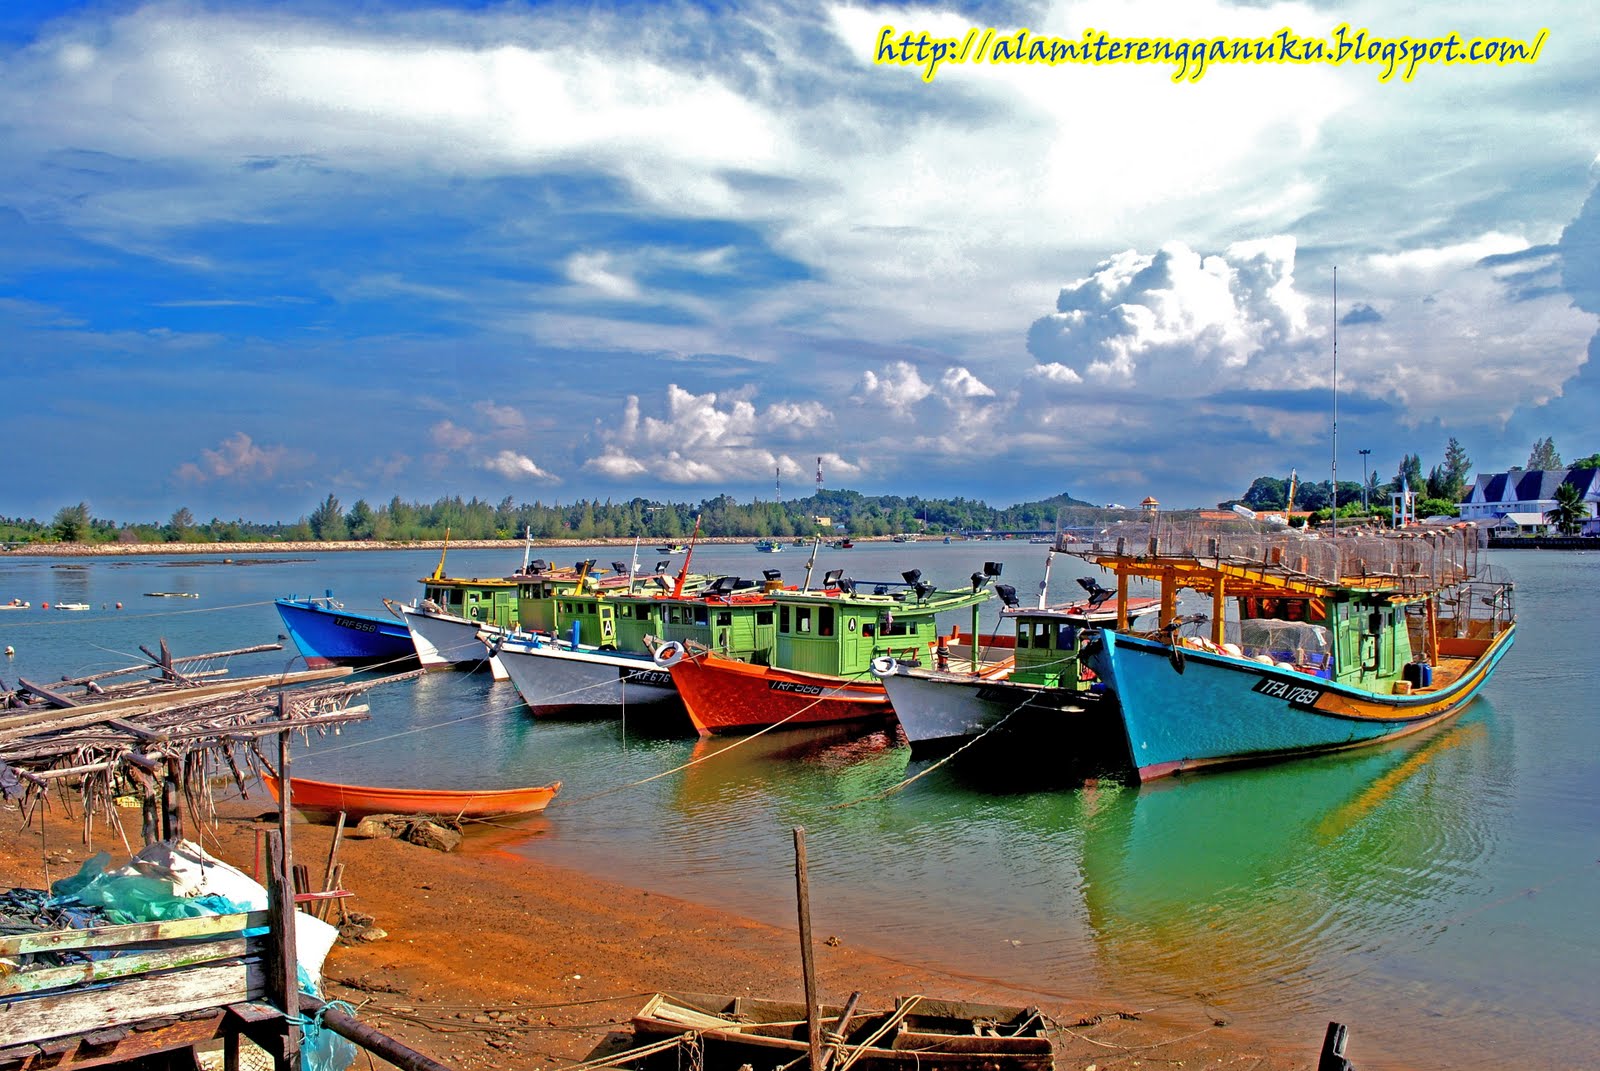 Alami Terengganu: Perkampungan Nelayan Marang : Jeti Ke Pulau Kapas